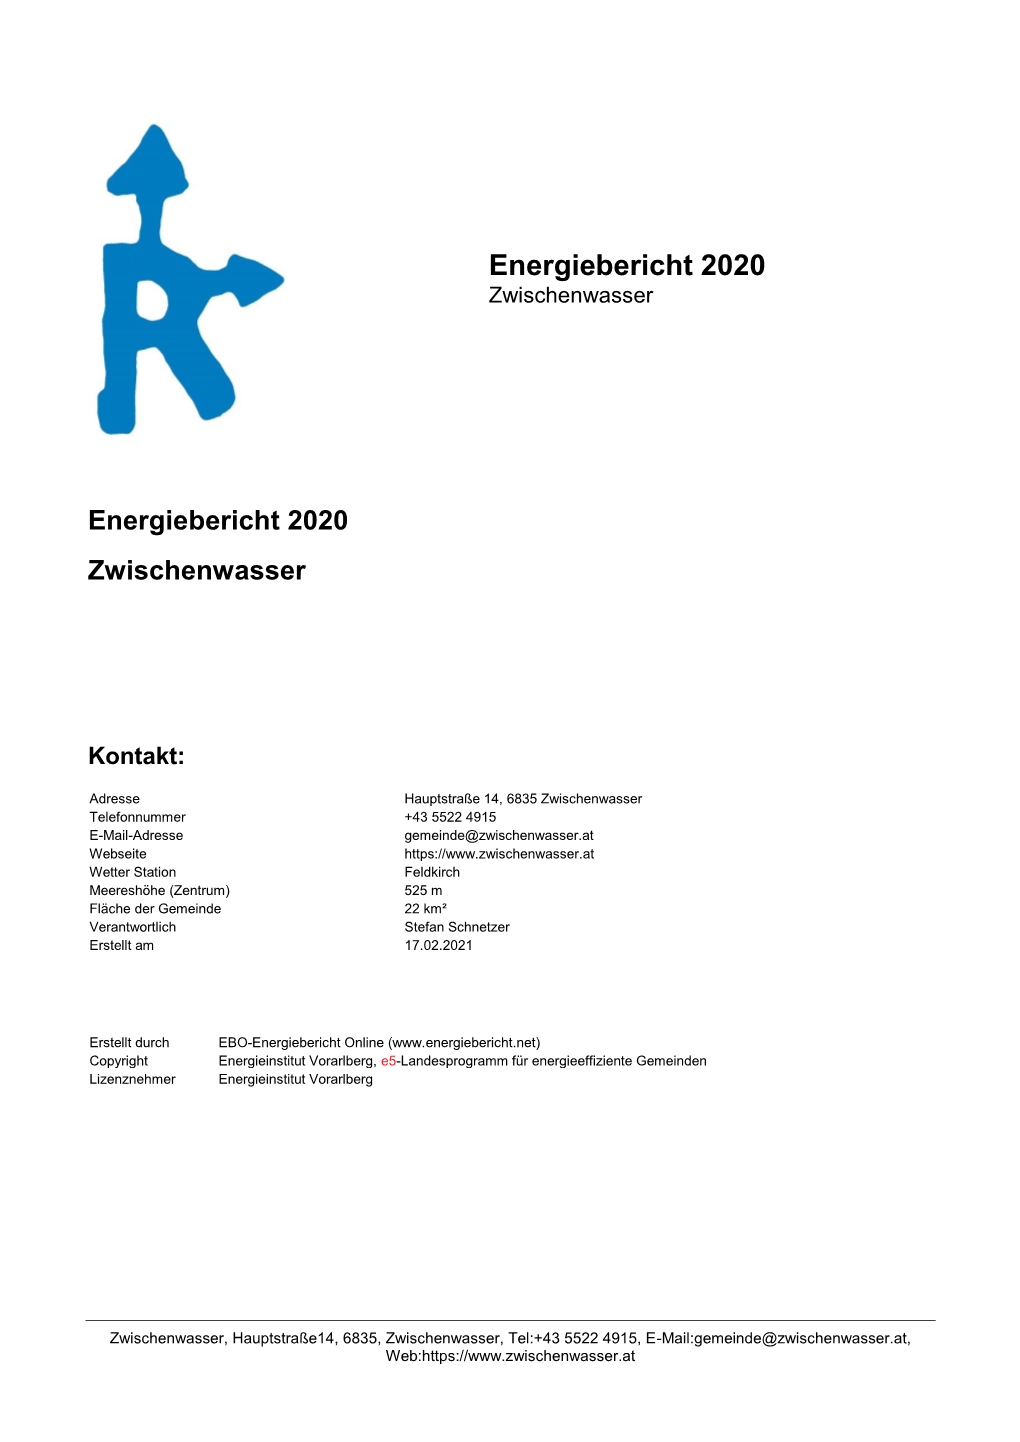 Energiebericht Zwischenwasser 2020